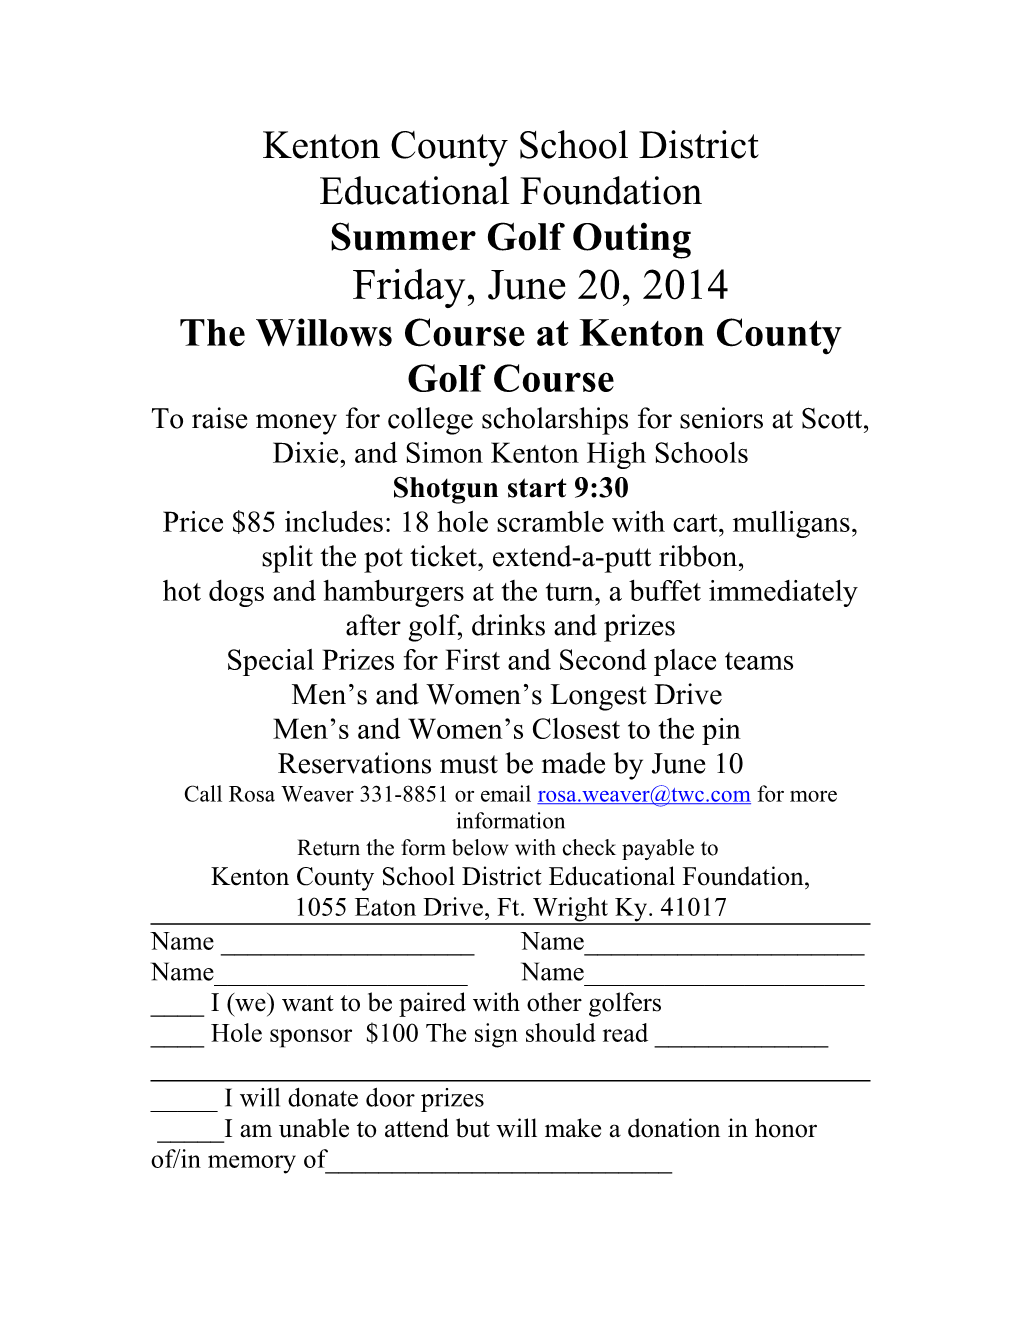 Kenton County Schools